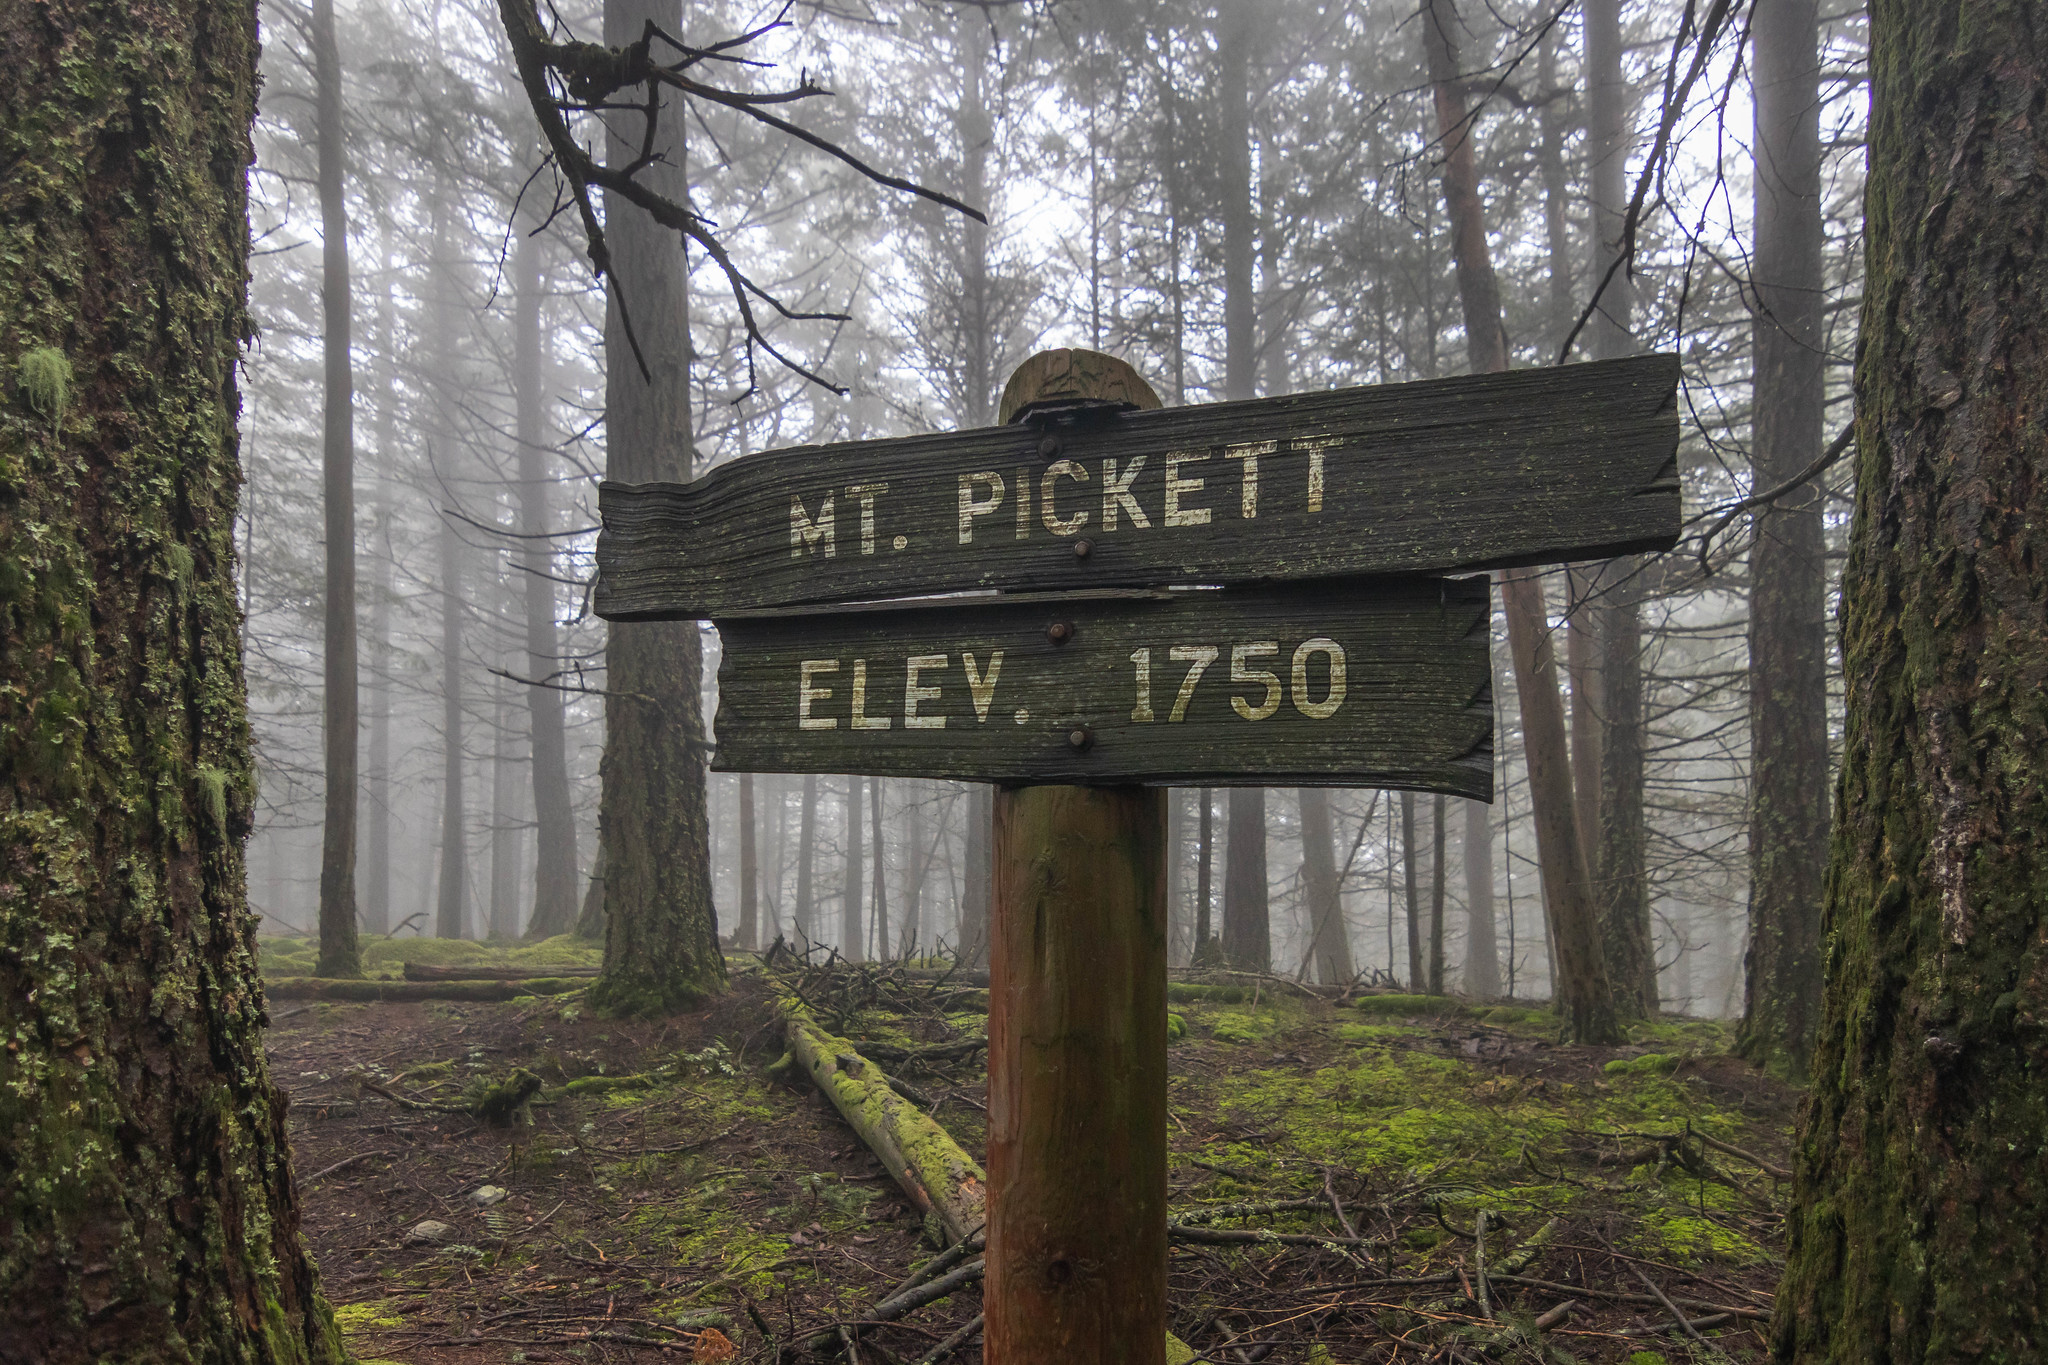 Mount Pickett summit